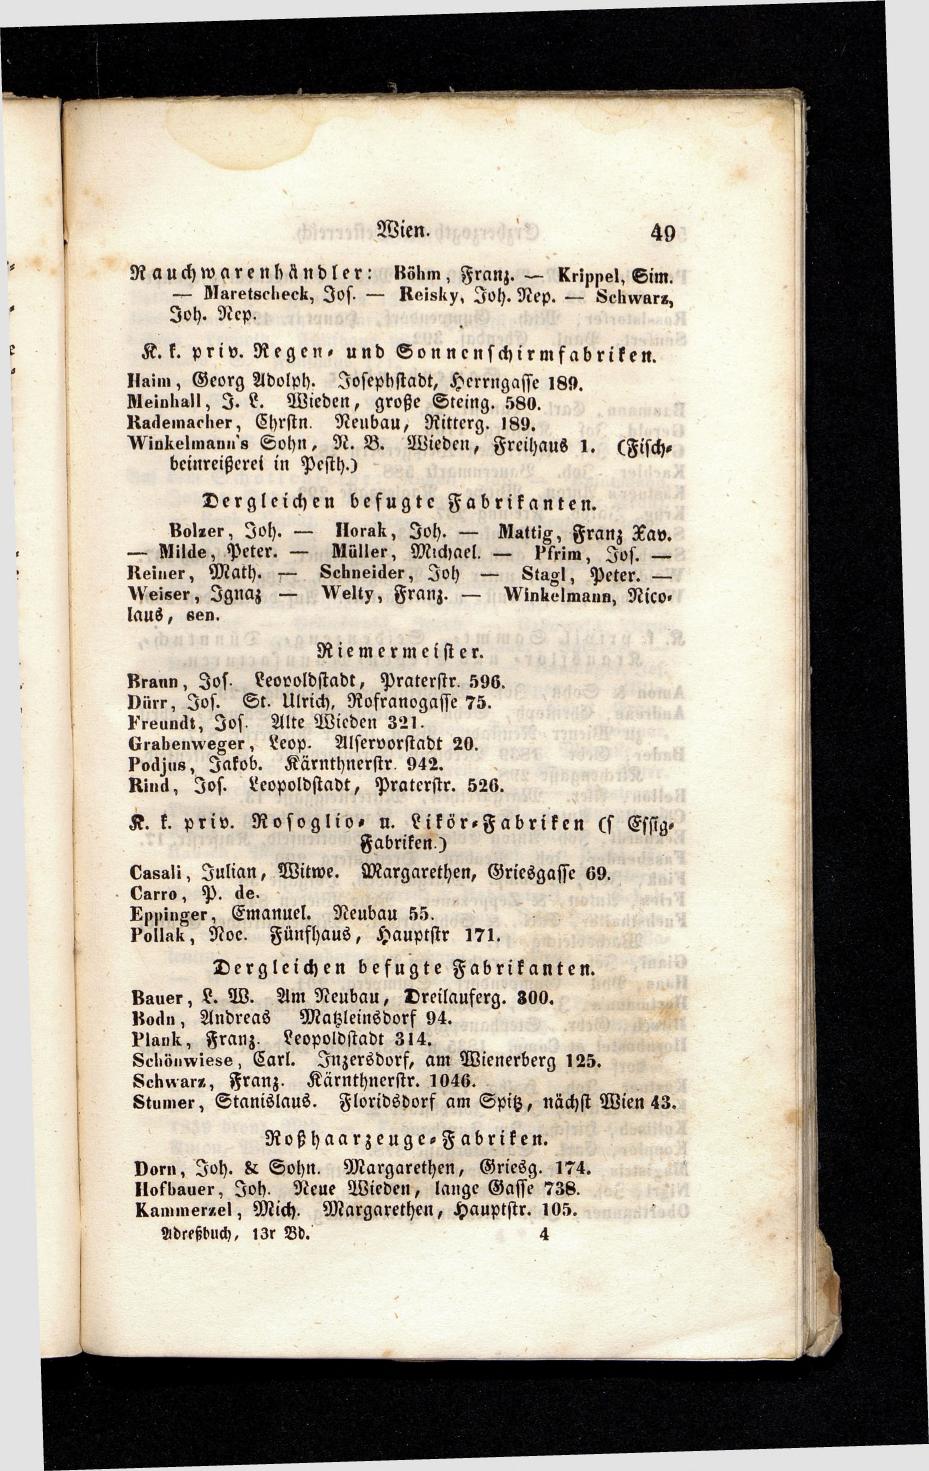 Grosses Adressbuch der Kaufleute. No. 13. Oesterreich ober u. unter der Enns 1844 - Seite 53